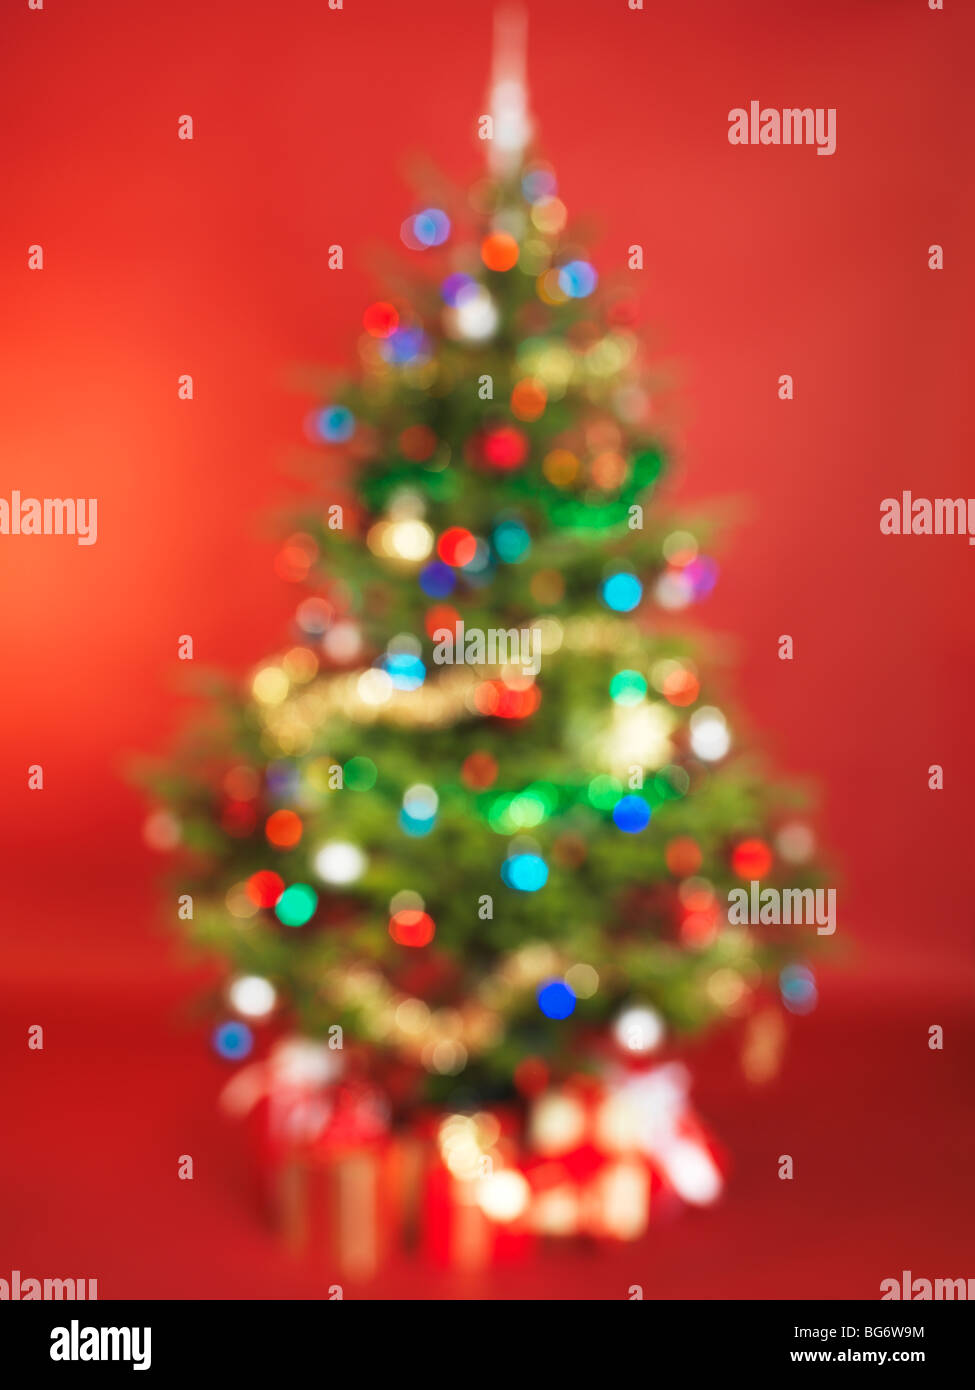 Al di fuori della messa a fuoco albero di Natale decorato isolato su sfondo rosso Foto Stock